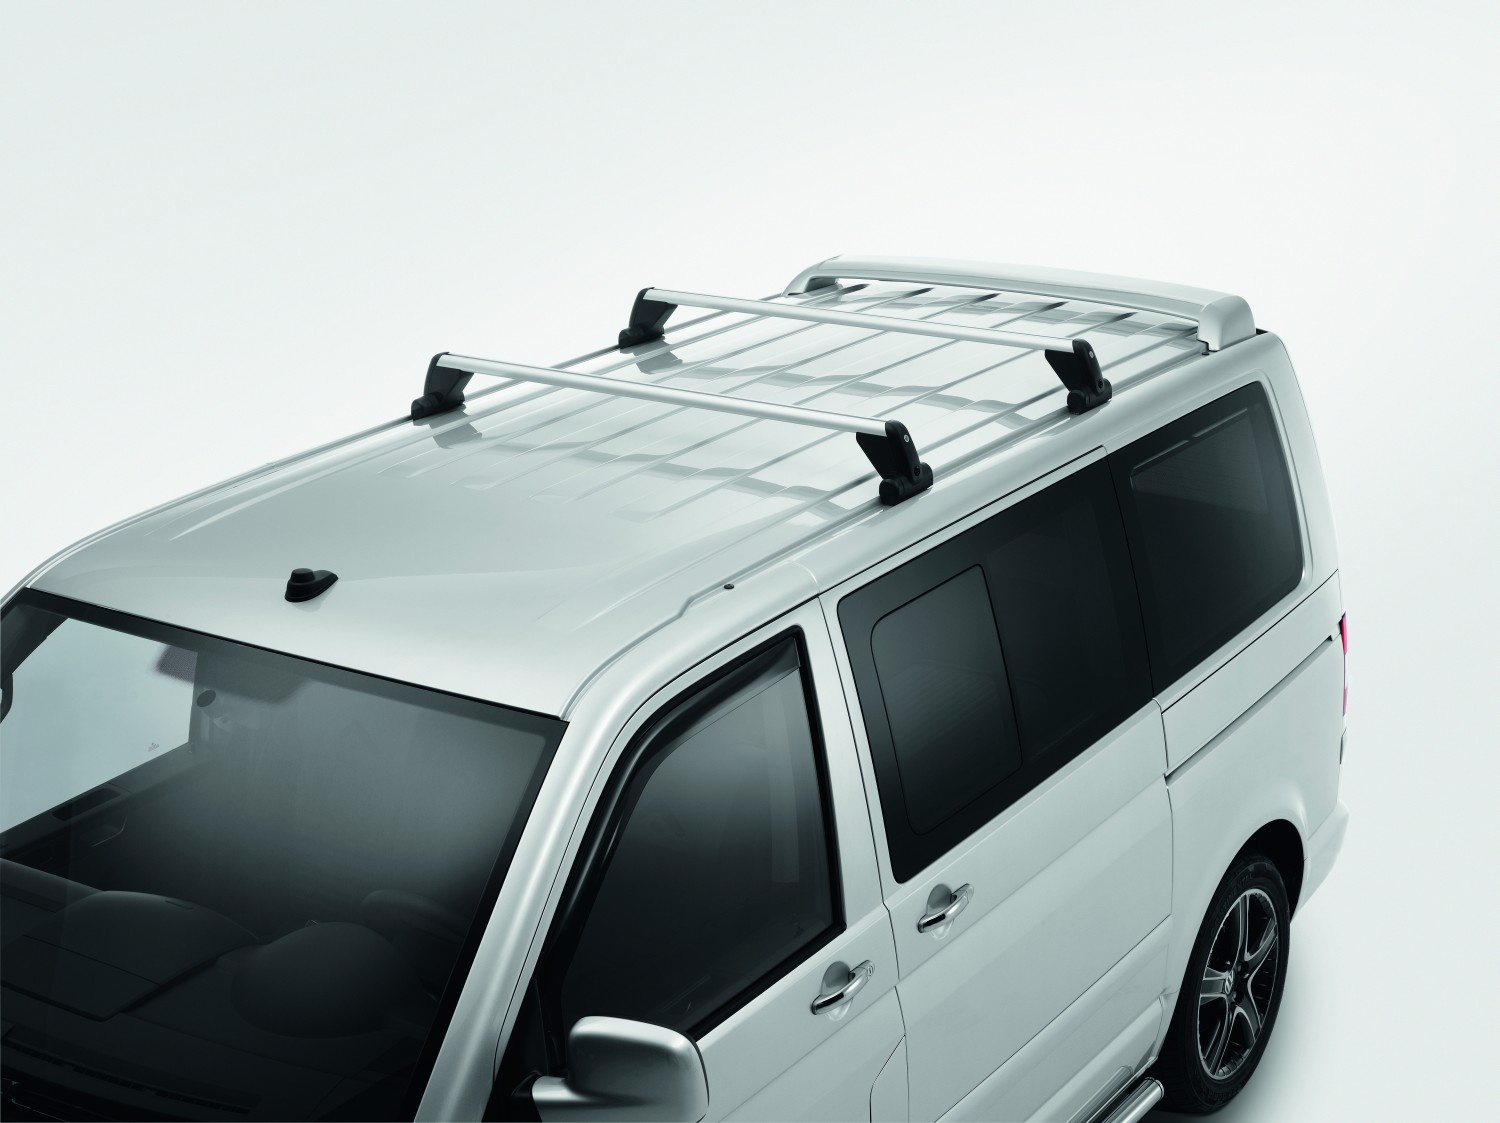 Portaequipajes de techo adecuadas para Volkswagen Transporter T5